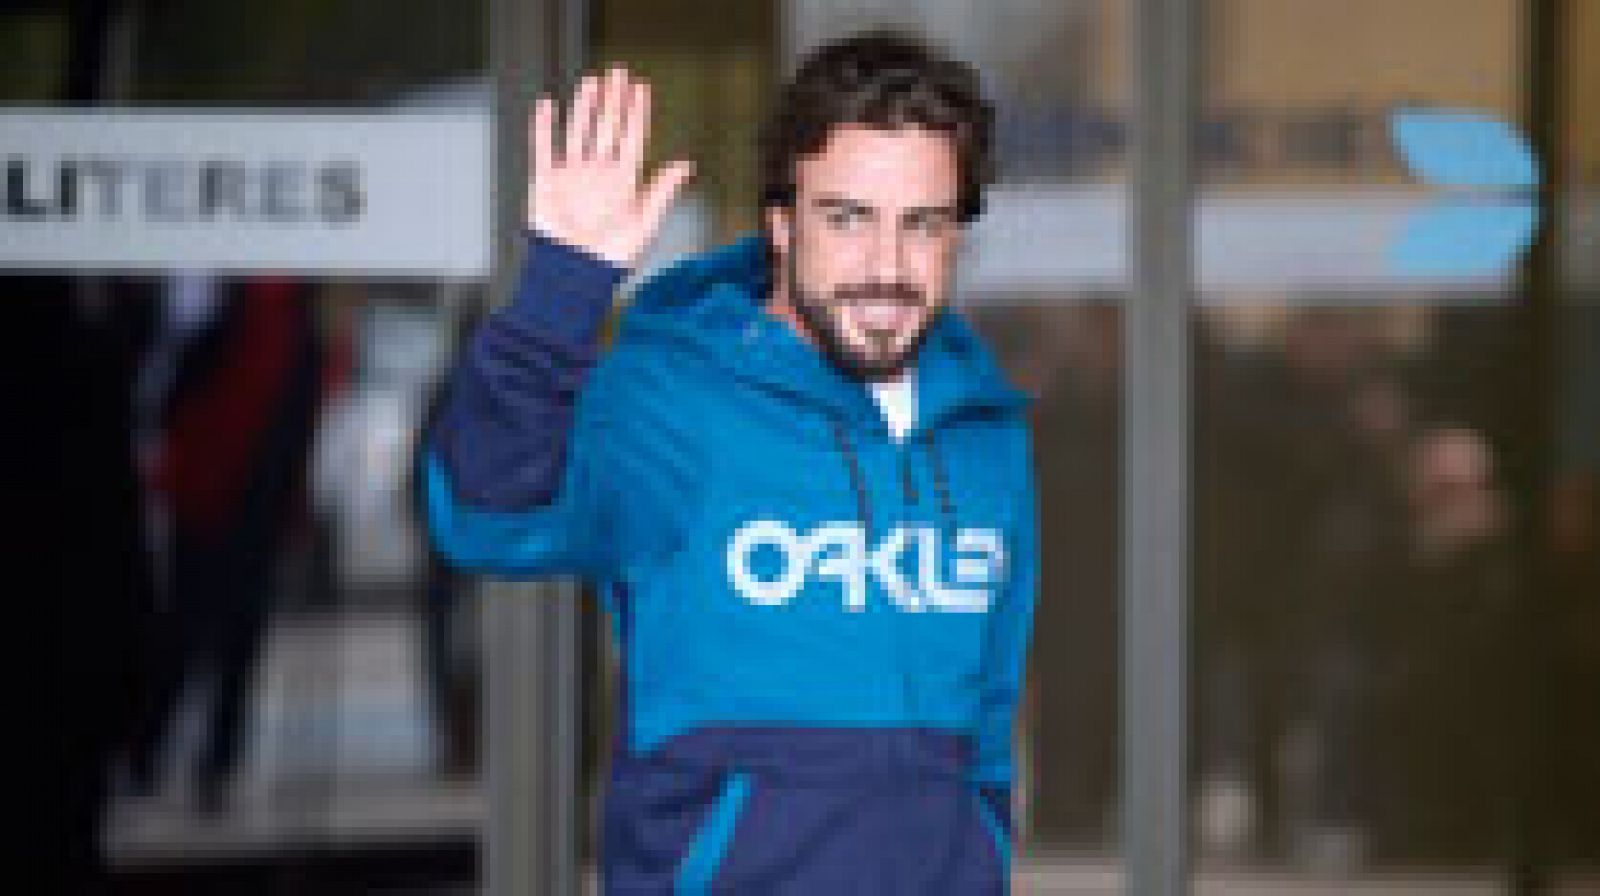 El piloto español Fernando Alonso (McLaren) ha abandonado el hospital después de tres días, tras un accidente el pasado domingo. Despejada una de las incógnitas sobre su estado, la siguiente es la de su regreso a las pistas.